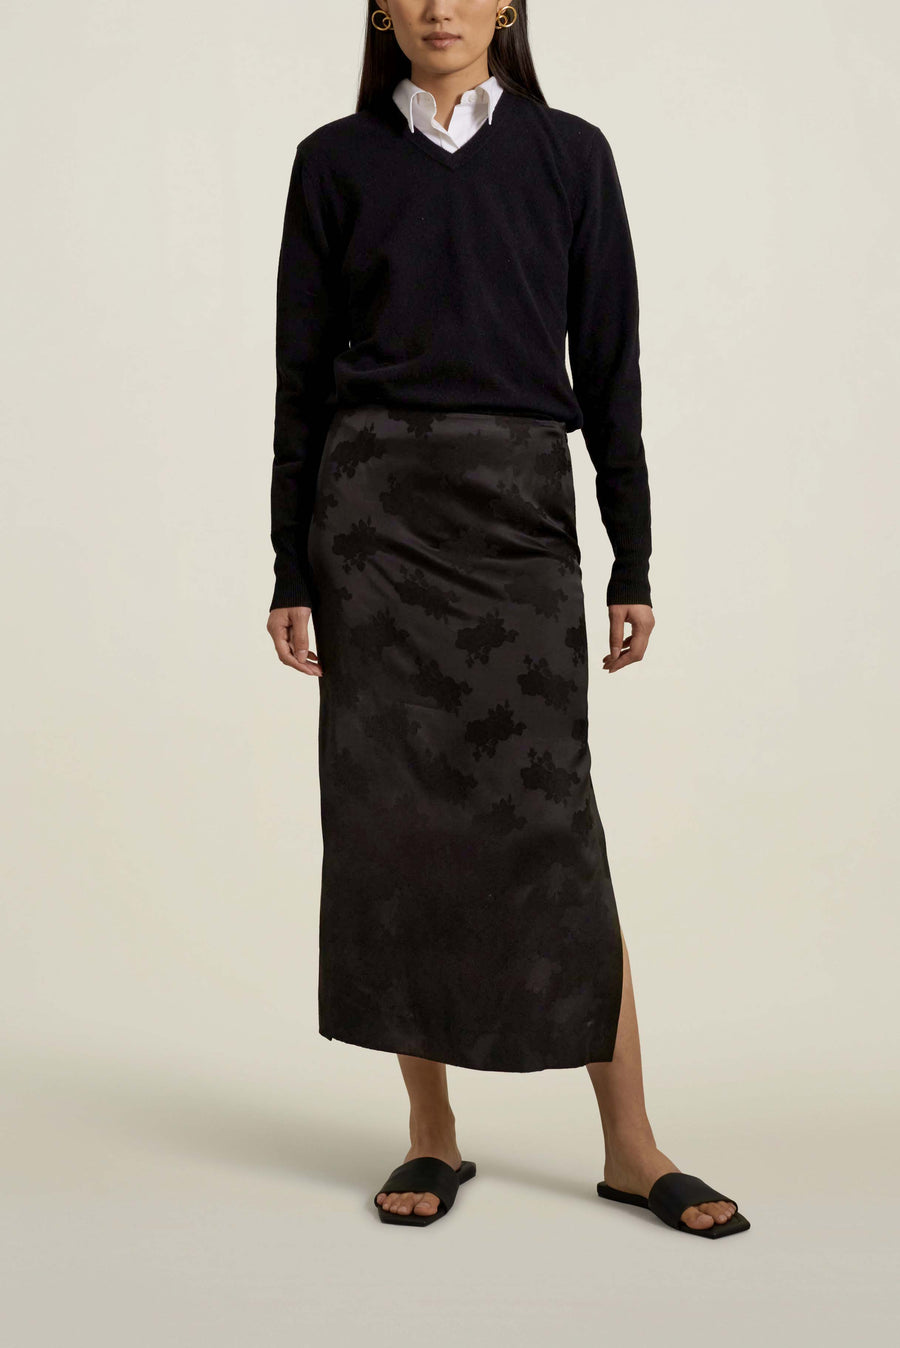 Forsyth Pencil Skirt in Black Viscose Floral